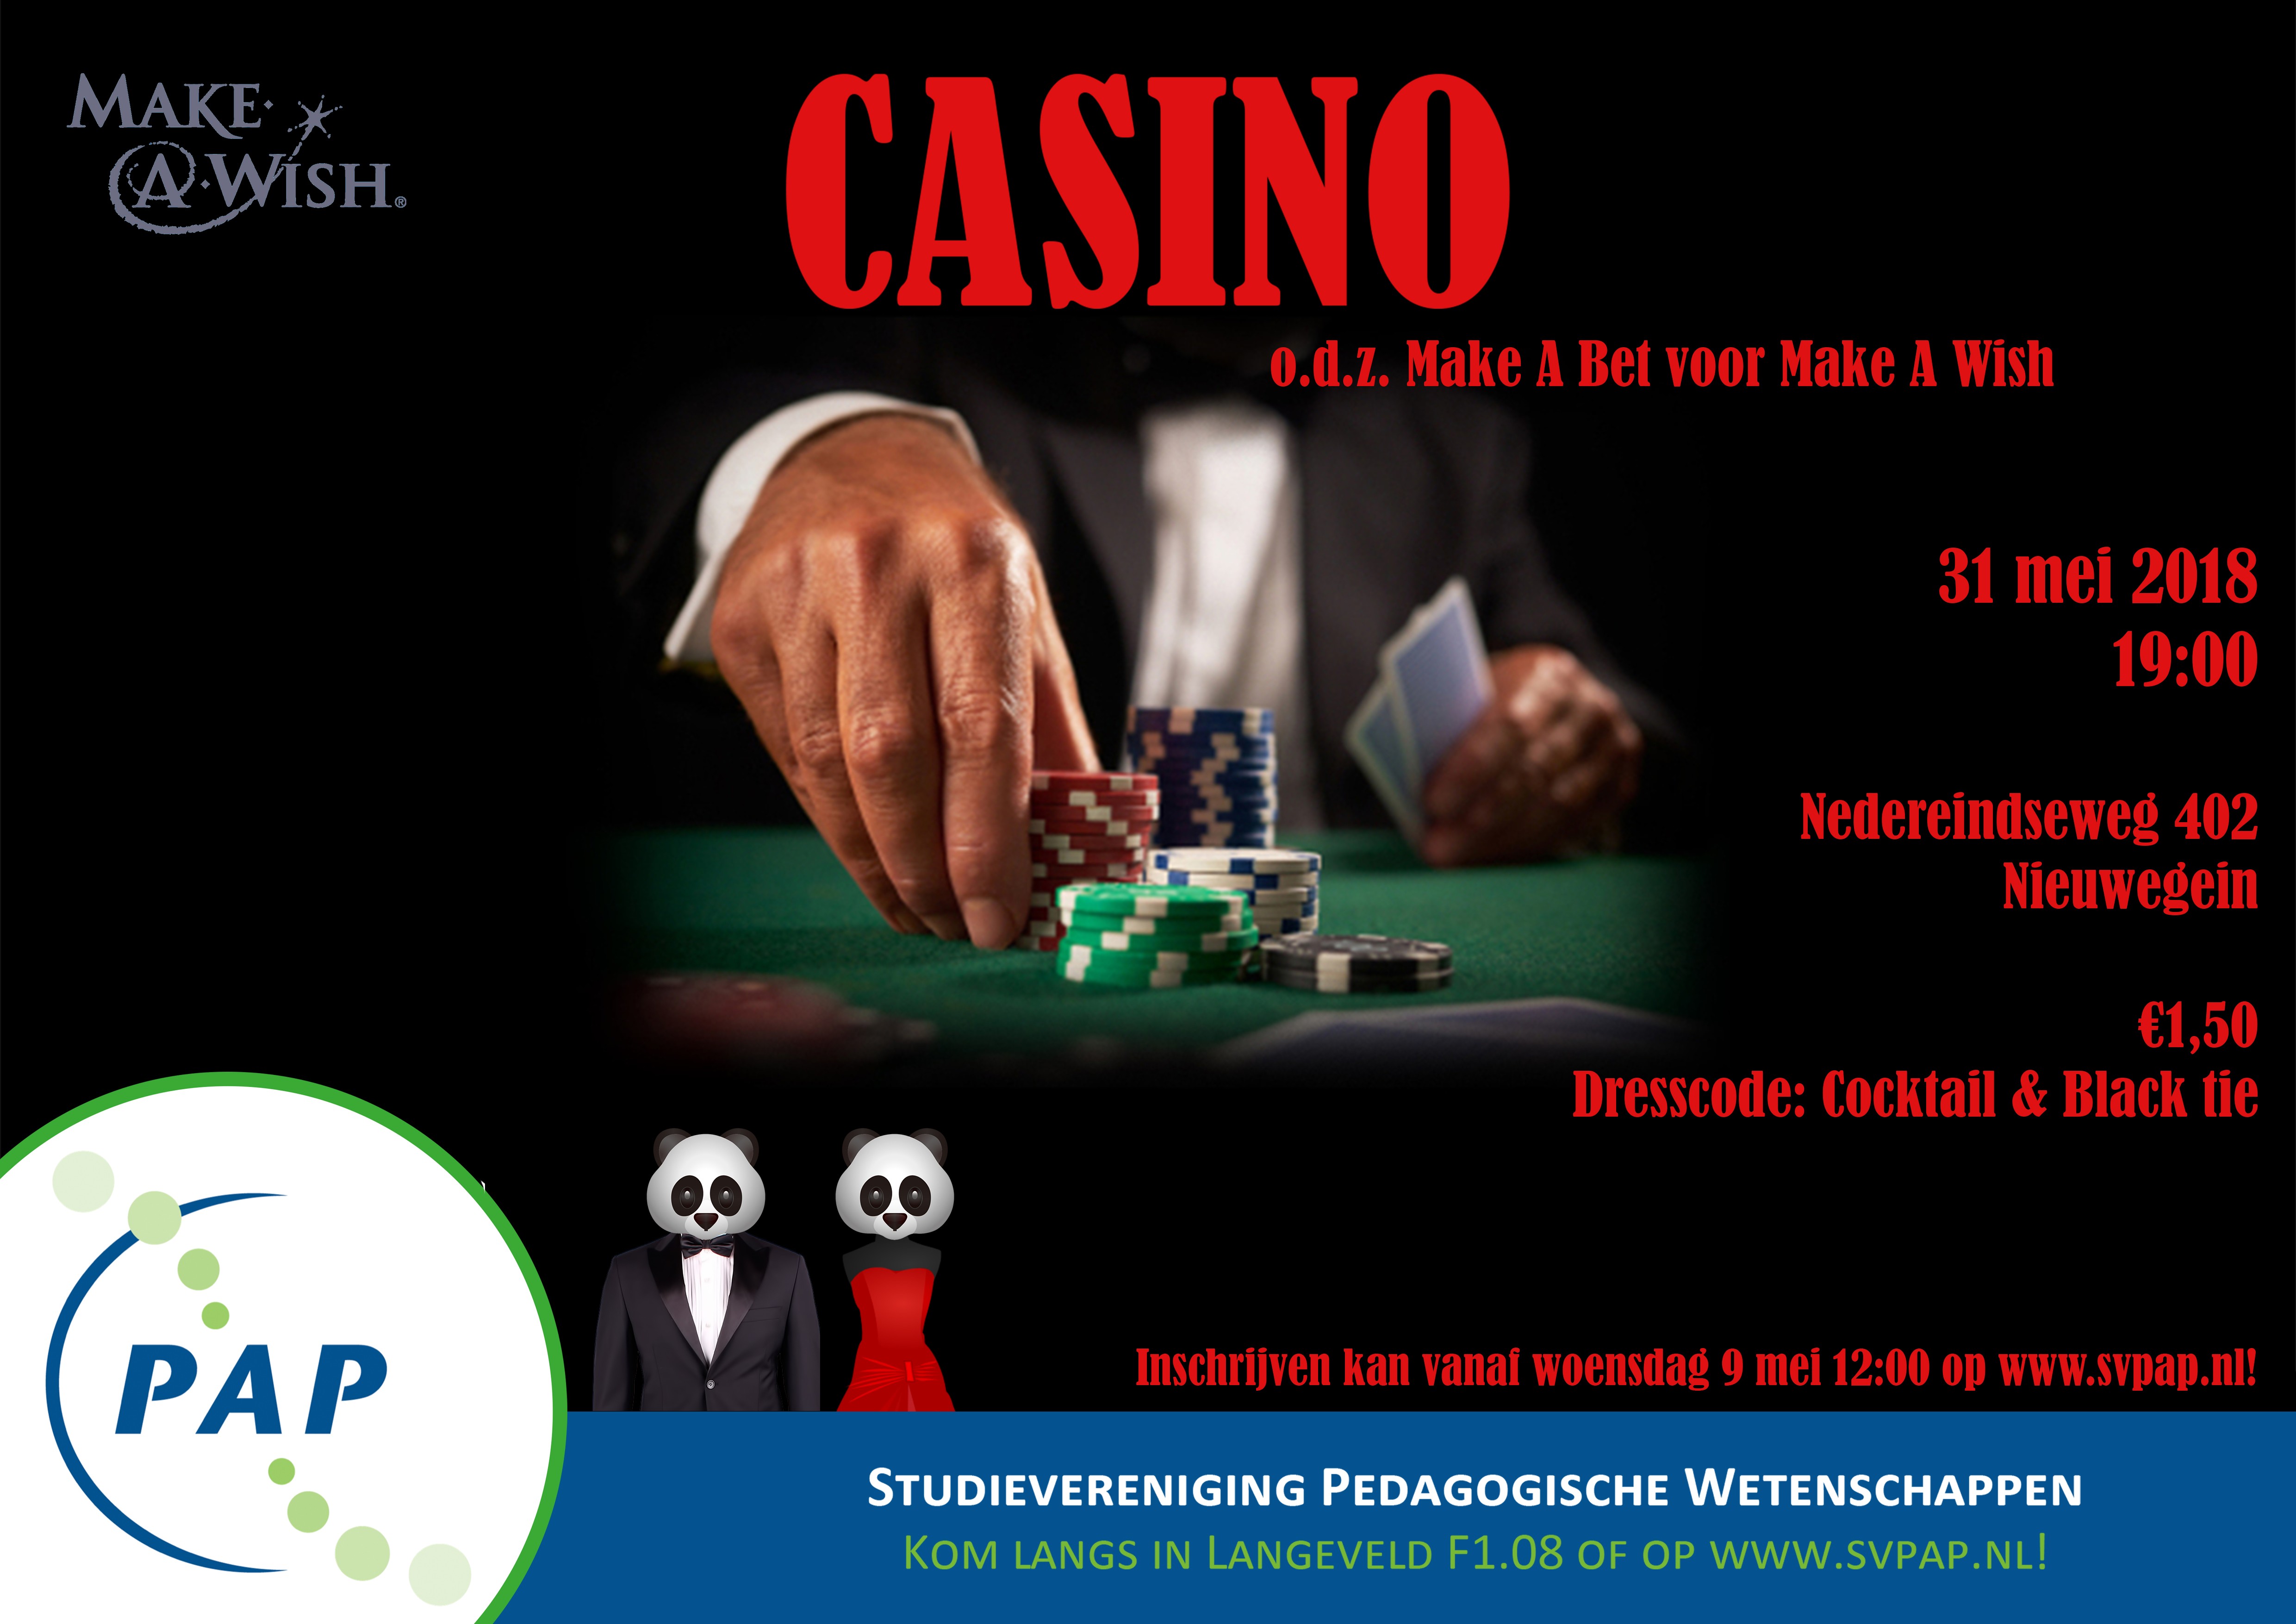 Casino avond: ‘Make a Bet for Make a Wish’